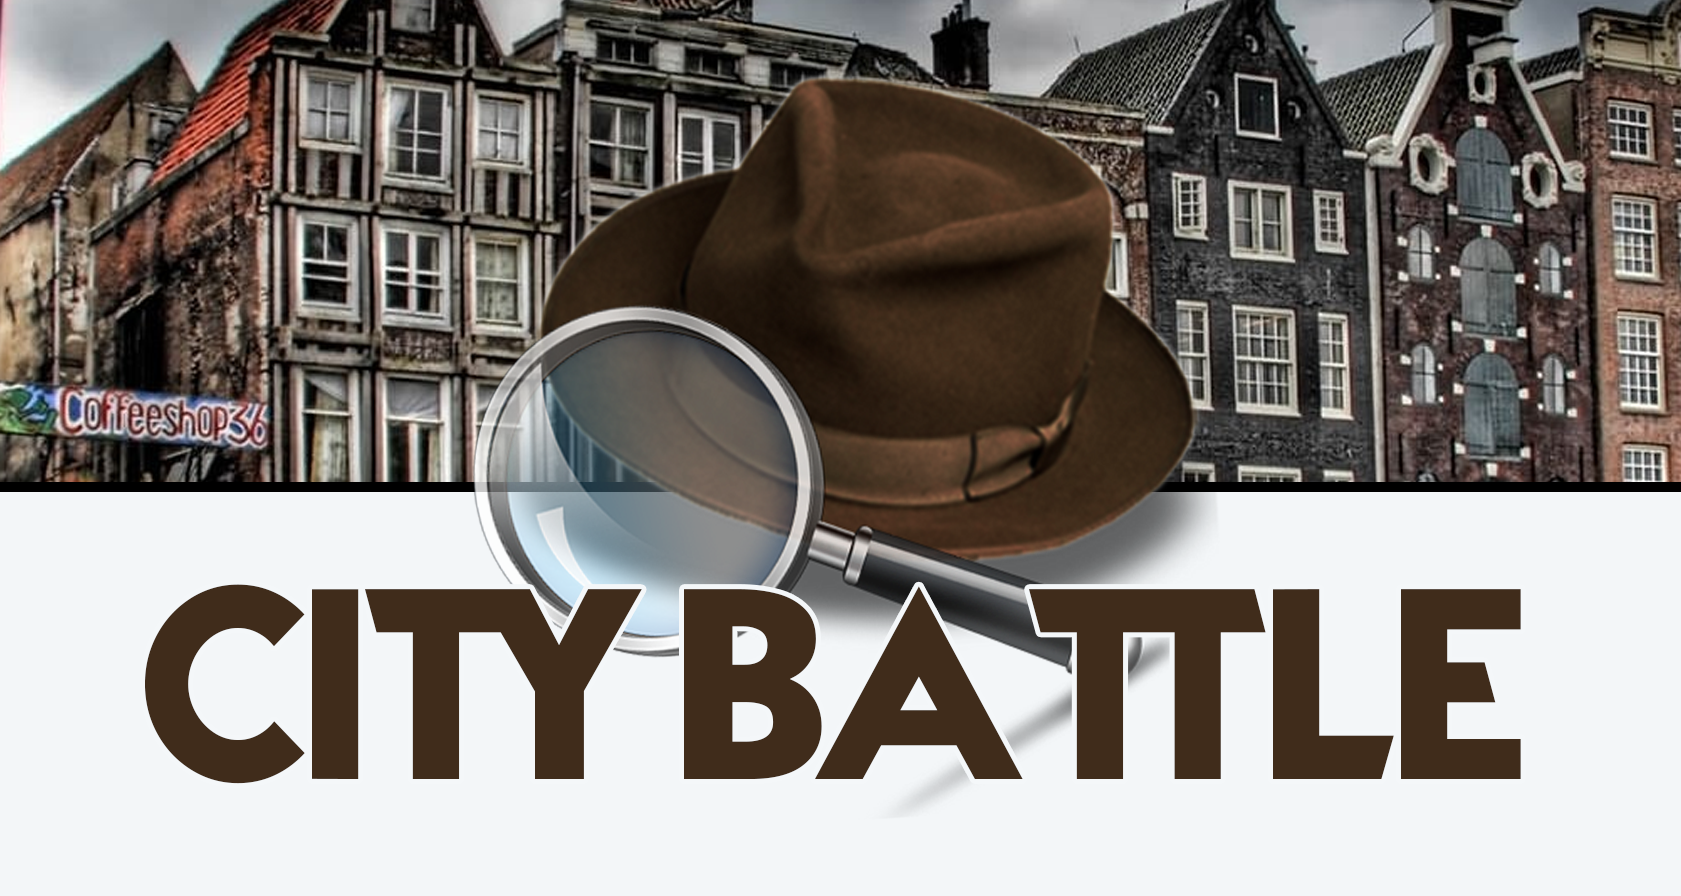 GPS City Battle Amsterdam Personeelsuitje